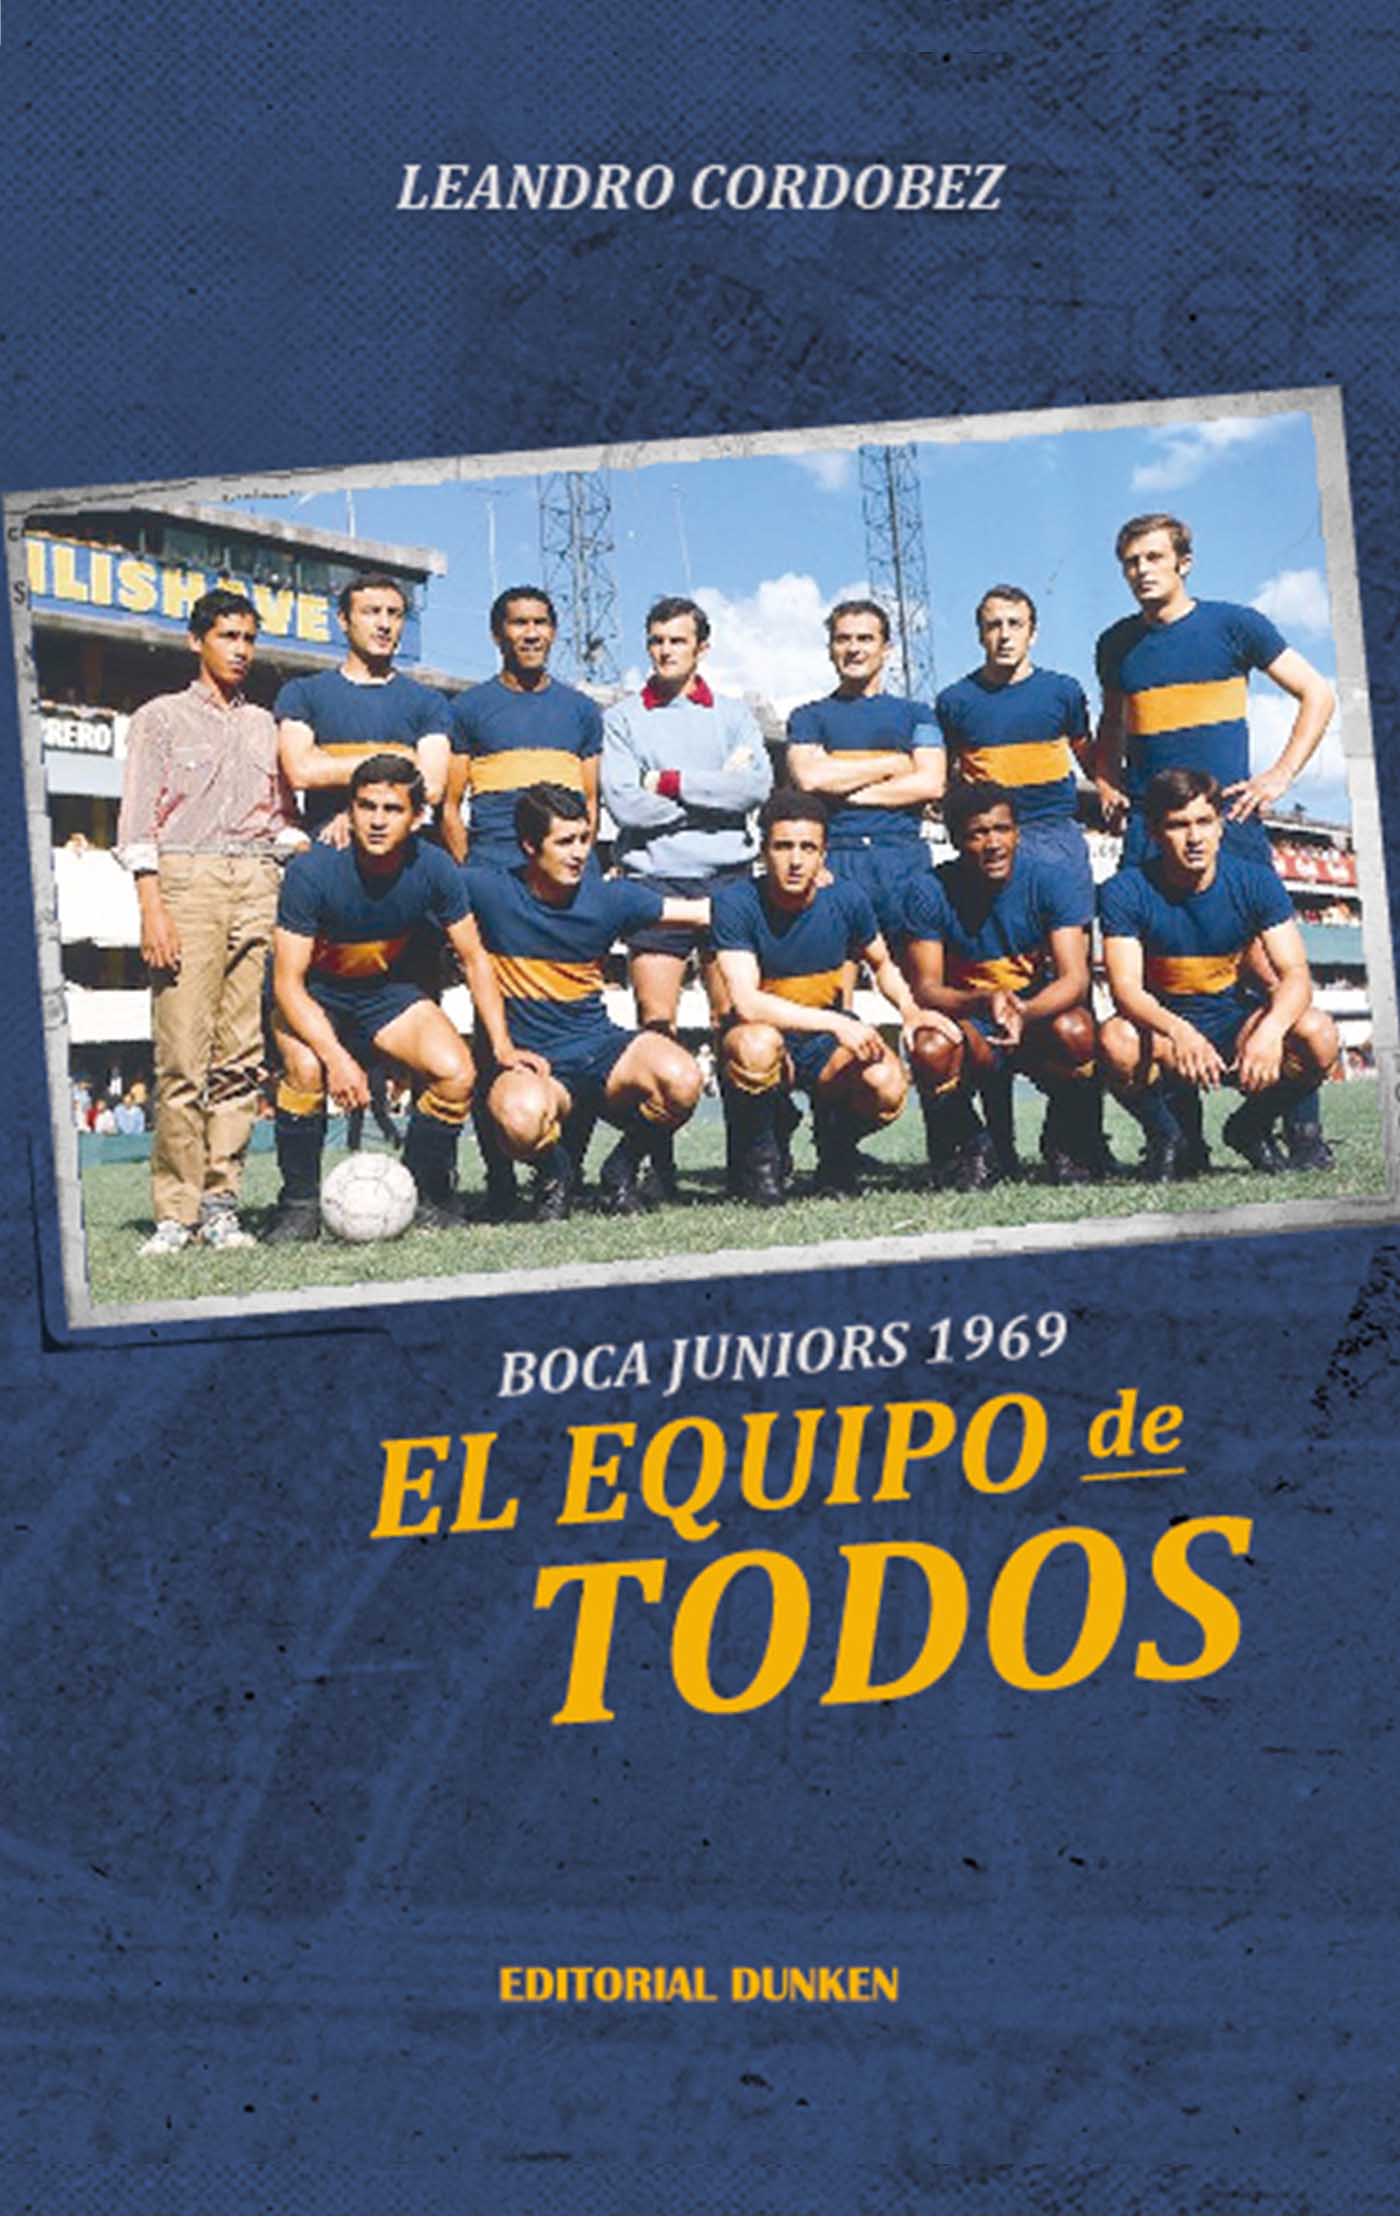 BOCA JUNIORS 1969: EL EQUIPO DE TODOS